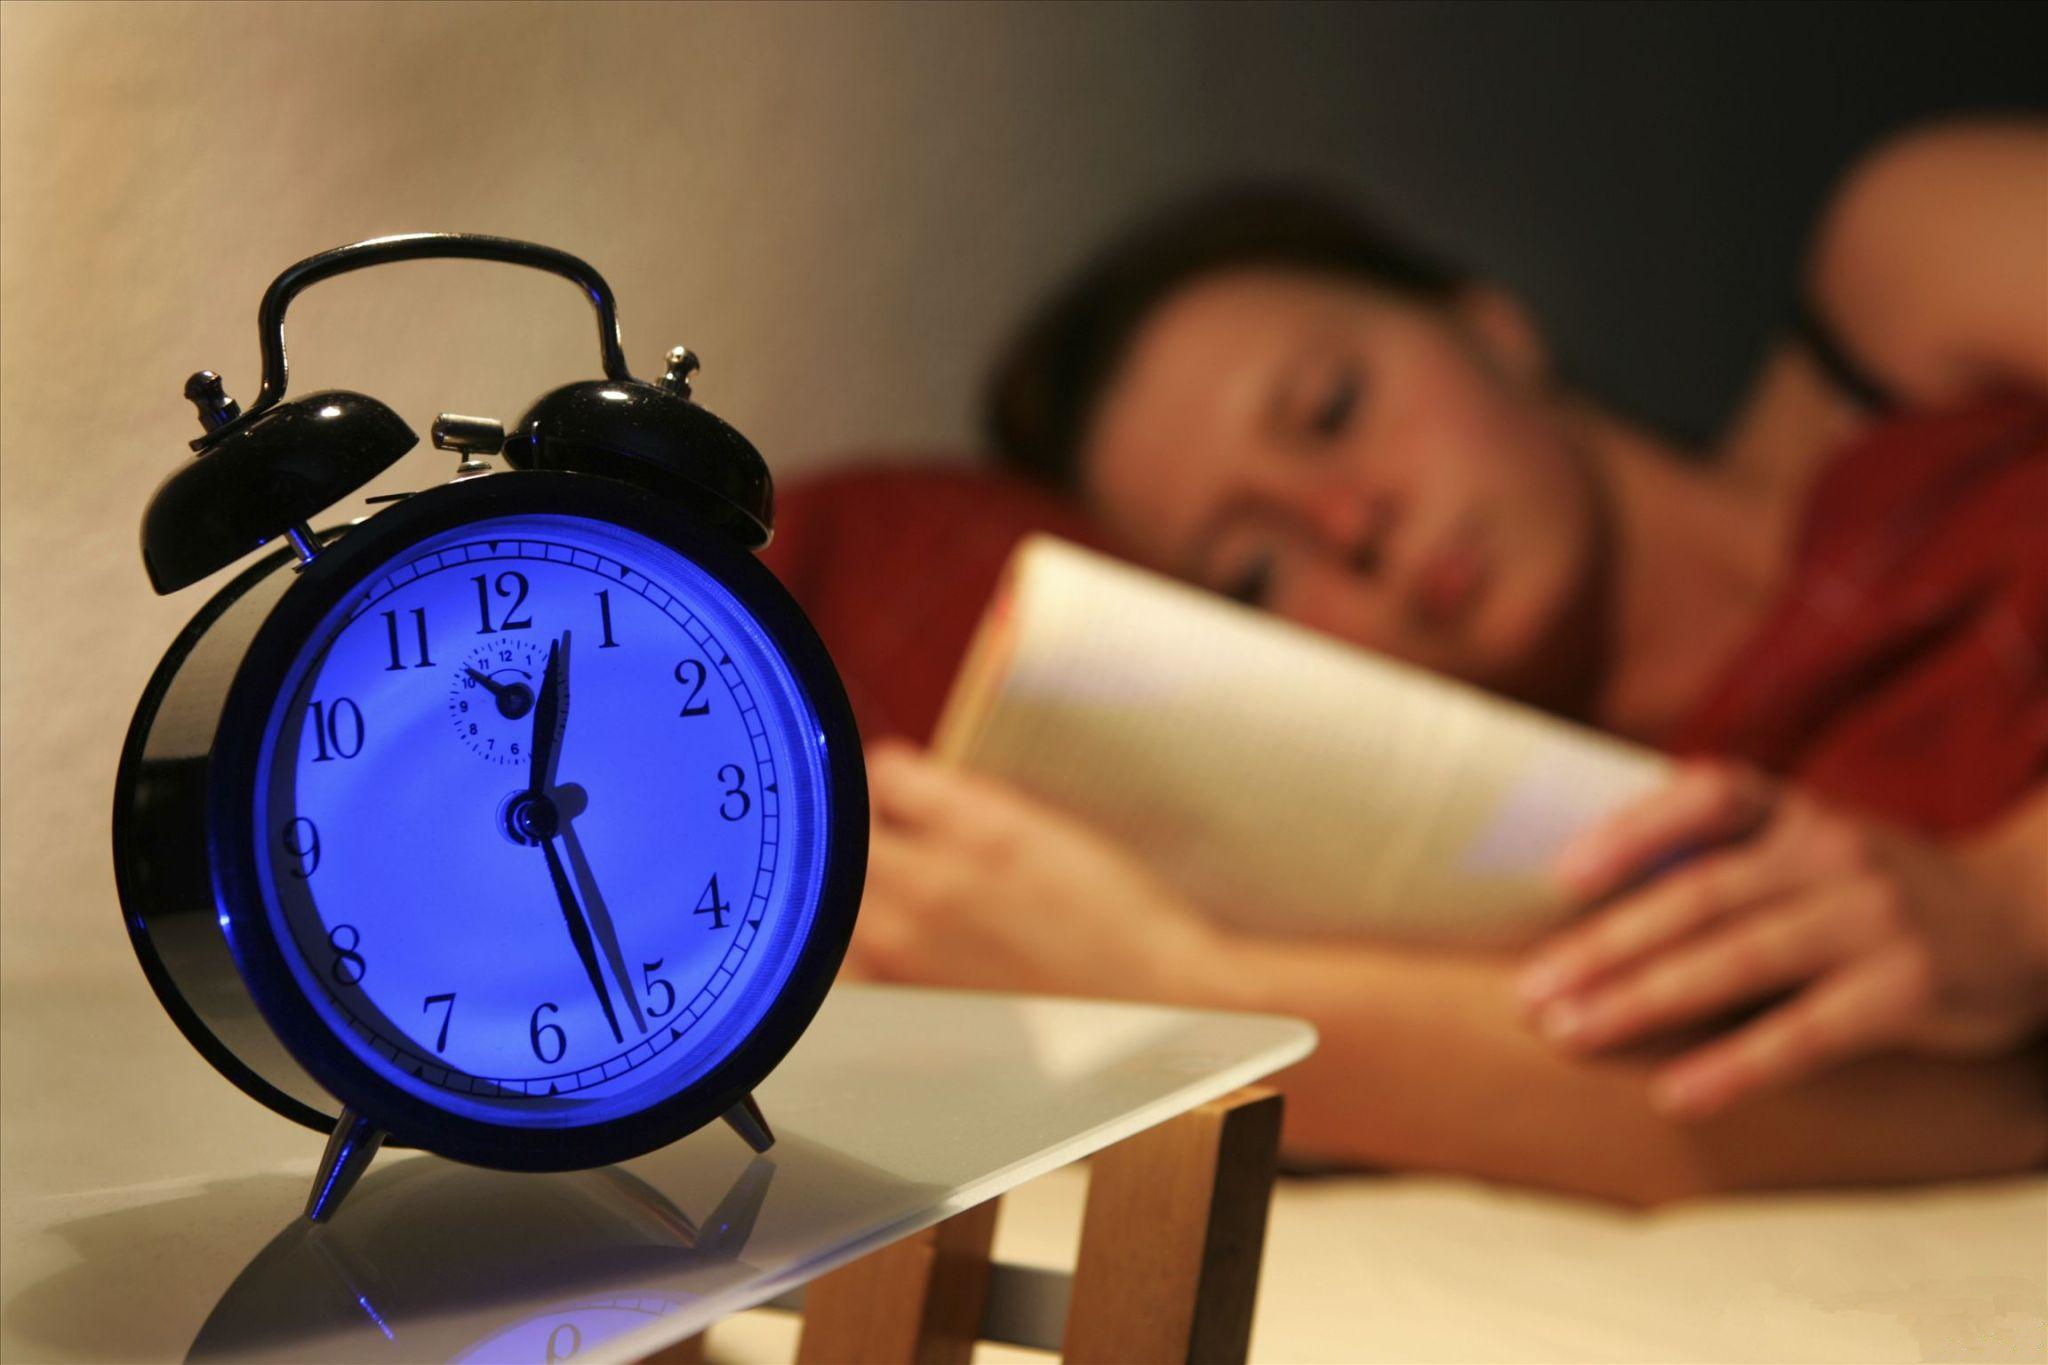 这些大家都已经知道, 还有一点需要强调的是:睡觉前一定要远离蓝光